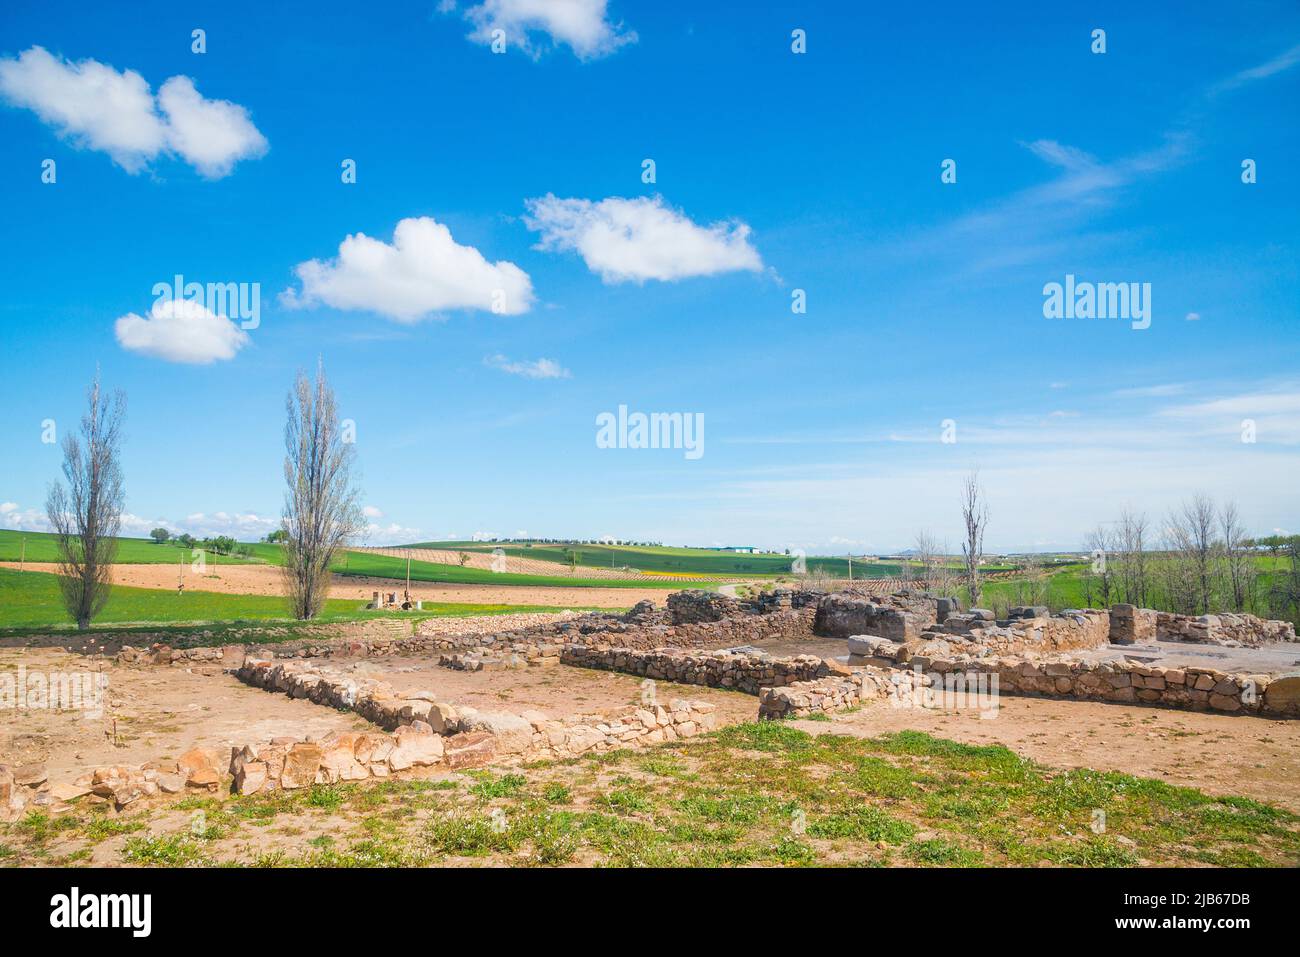 Los Hitos, Visigothic ruins. Arisgotas, Toledo province, Castilla La Mancha, Spain. Stock Photo